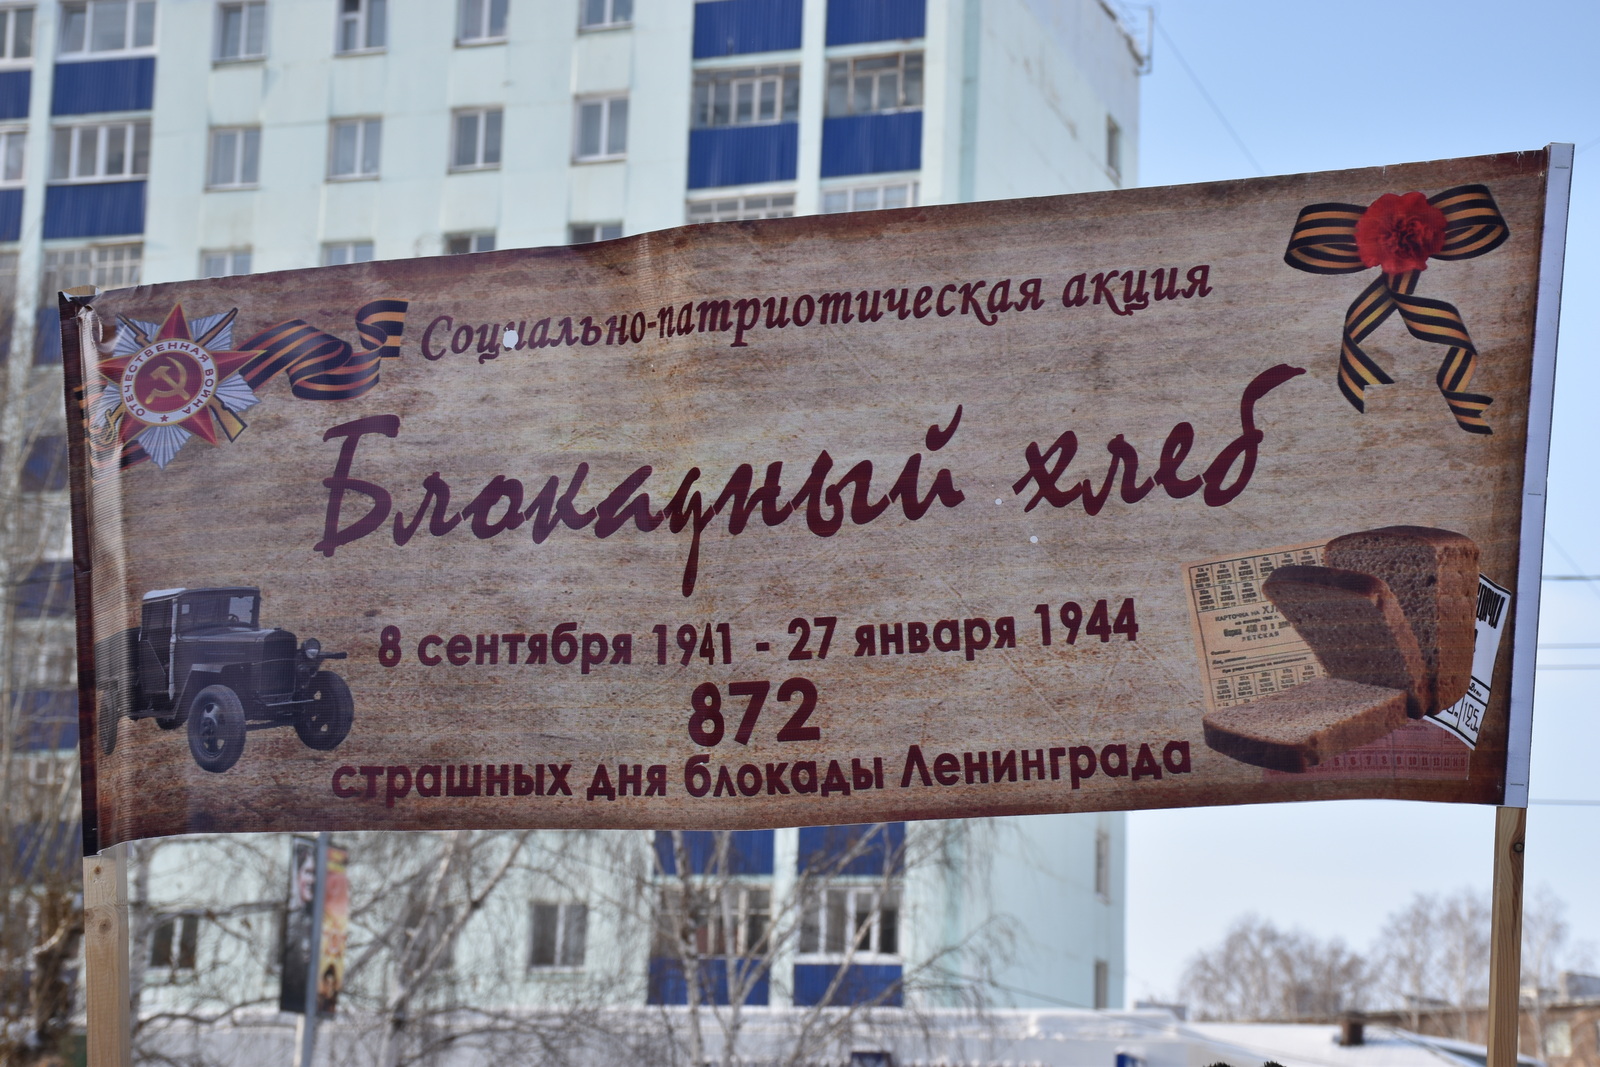 27 января - 79-я годовщина окончательного снятия блокады Ленинграда (1944 г.)